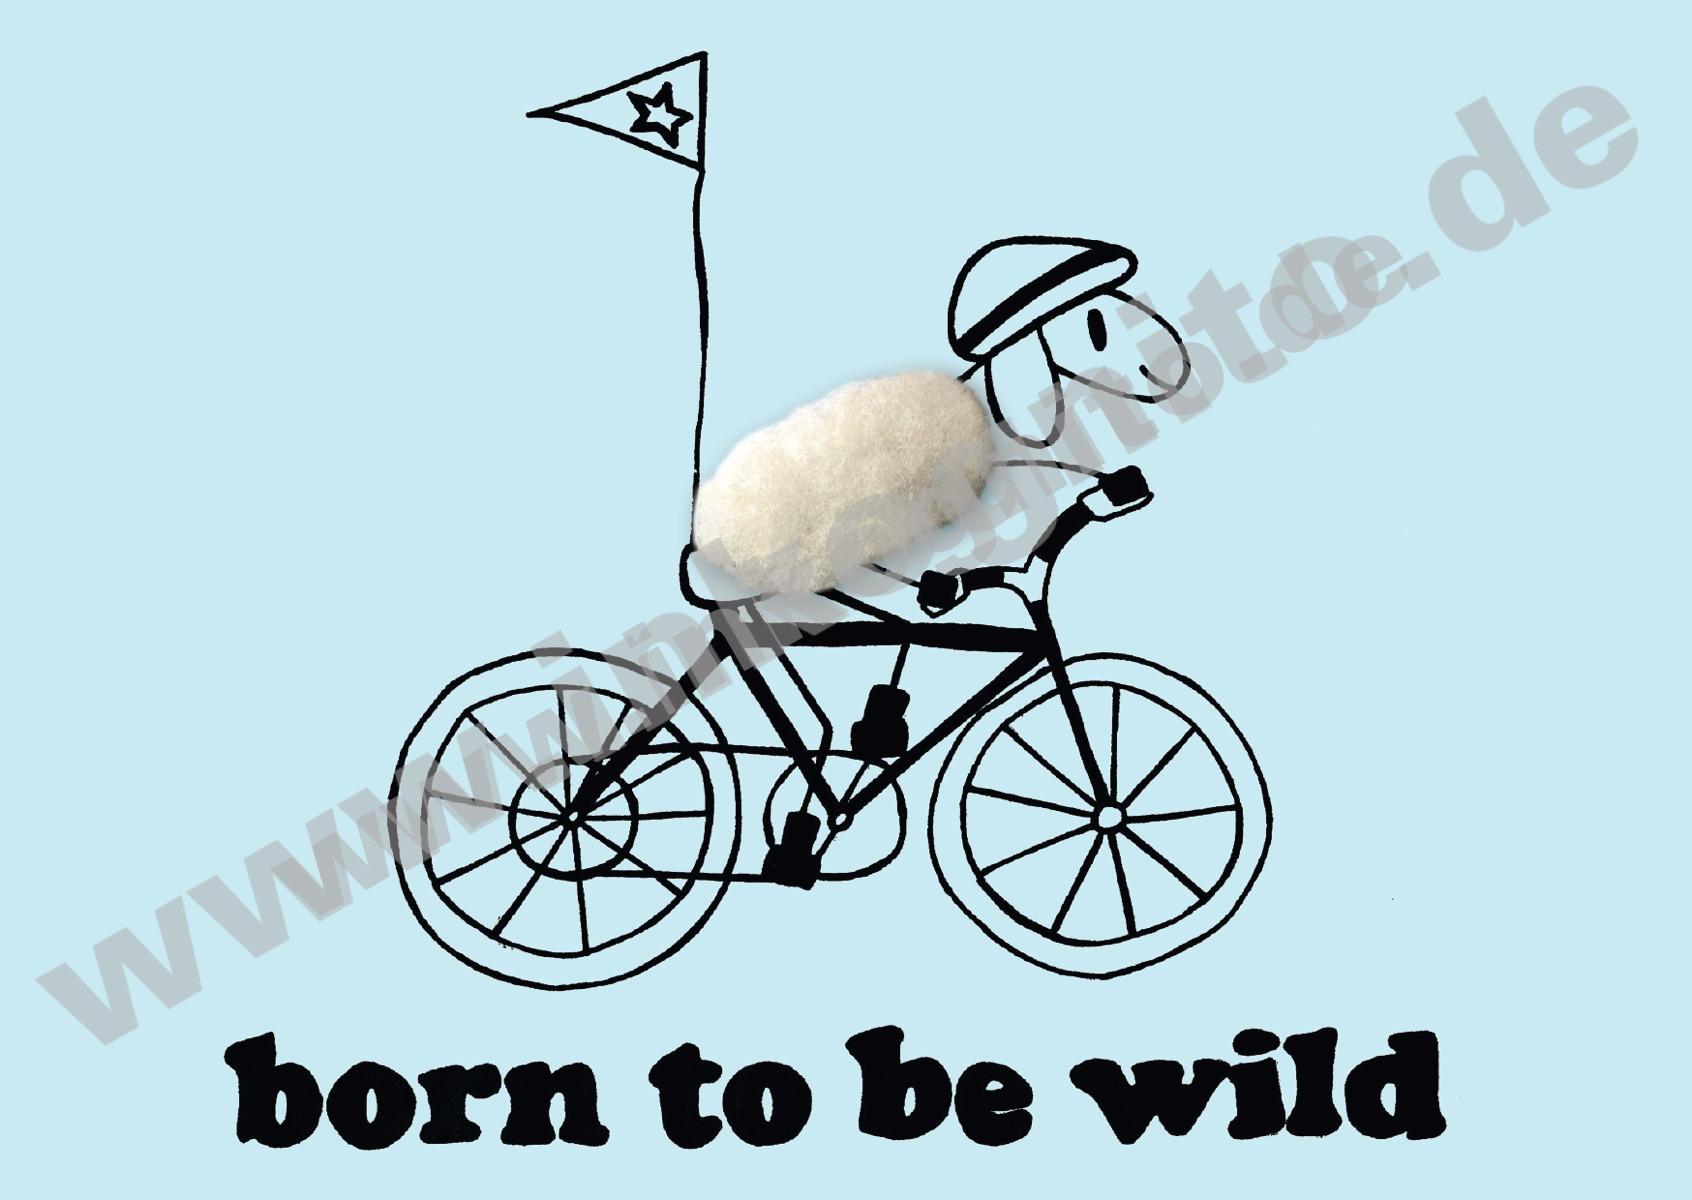 Plüschkarte "Born to be wild"